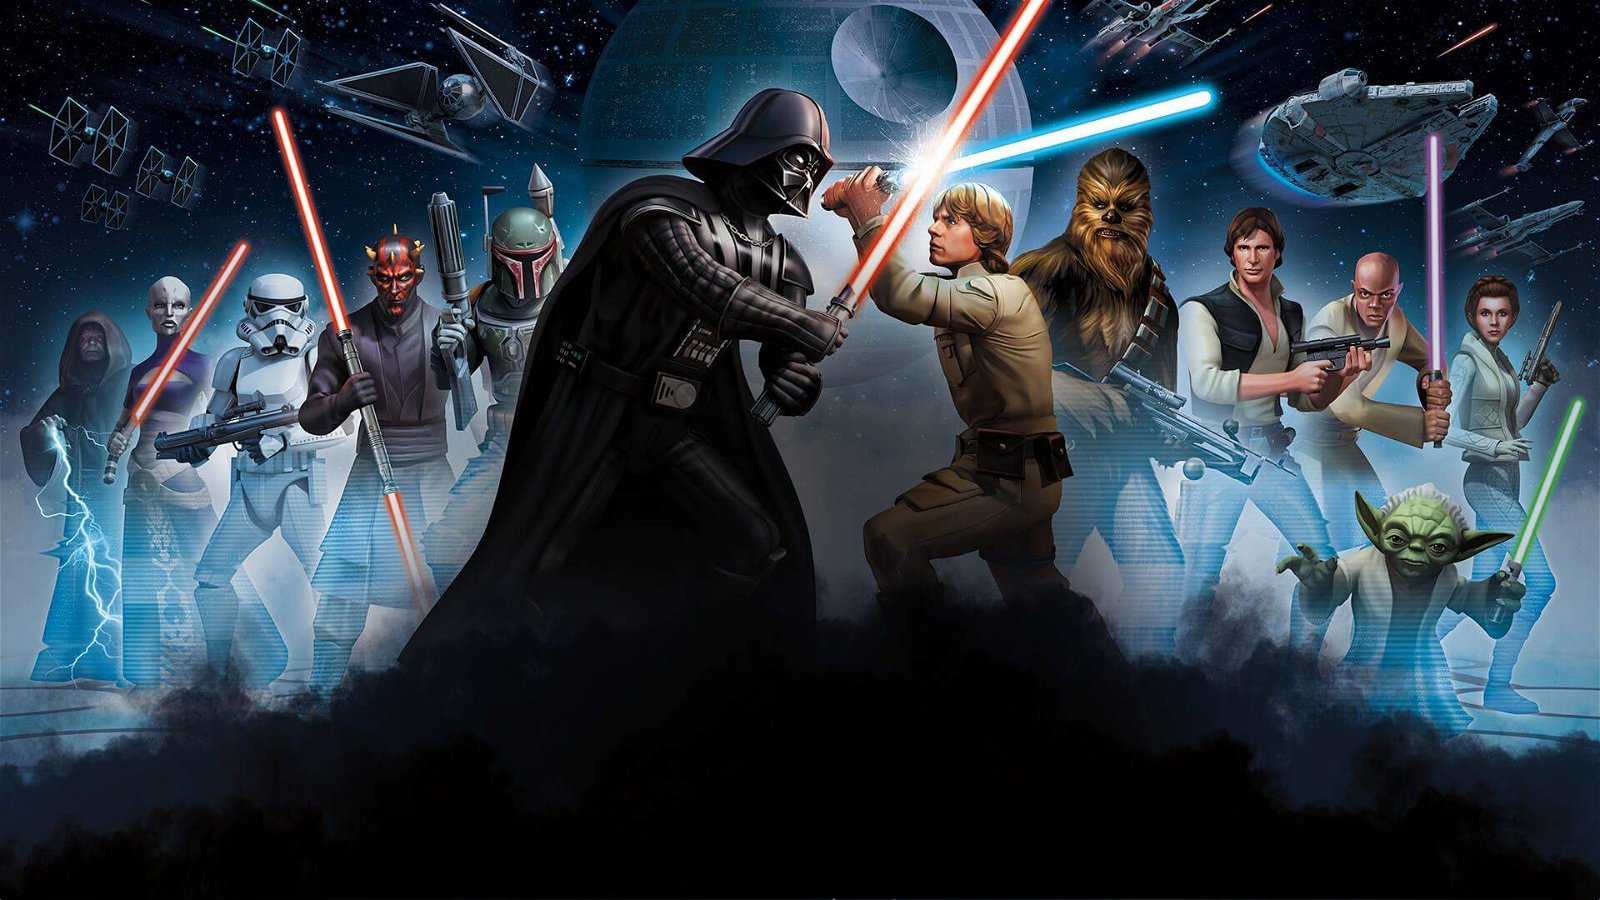 Immagine di USAopoly stringe un nuovo accordo commerciale con Disney per licenze a tema Star Wars